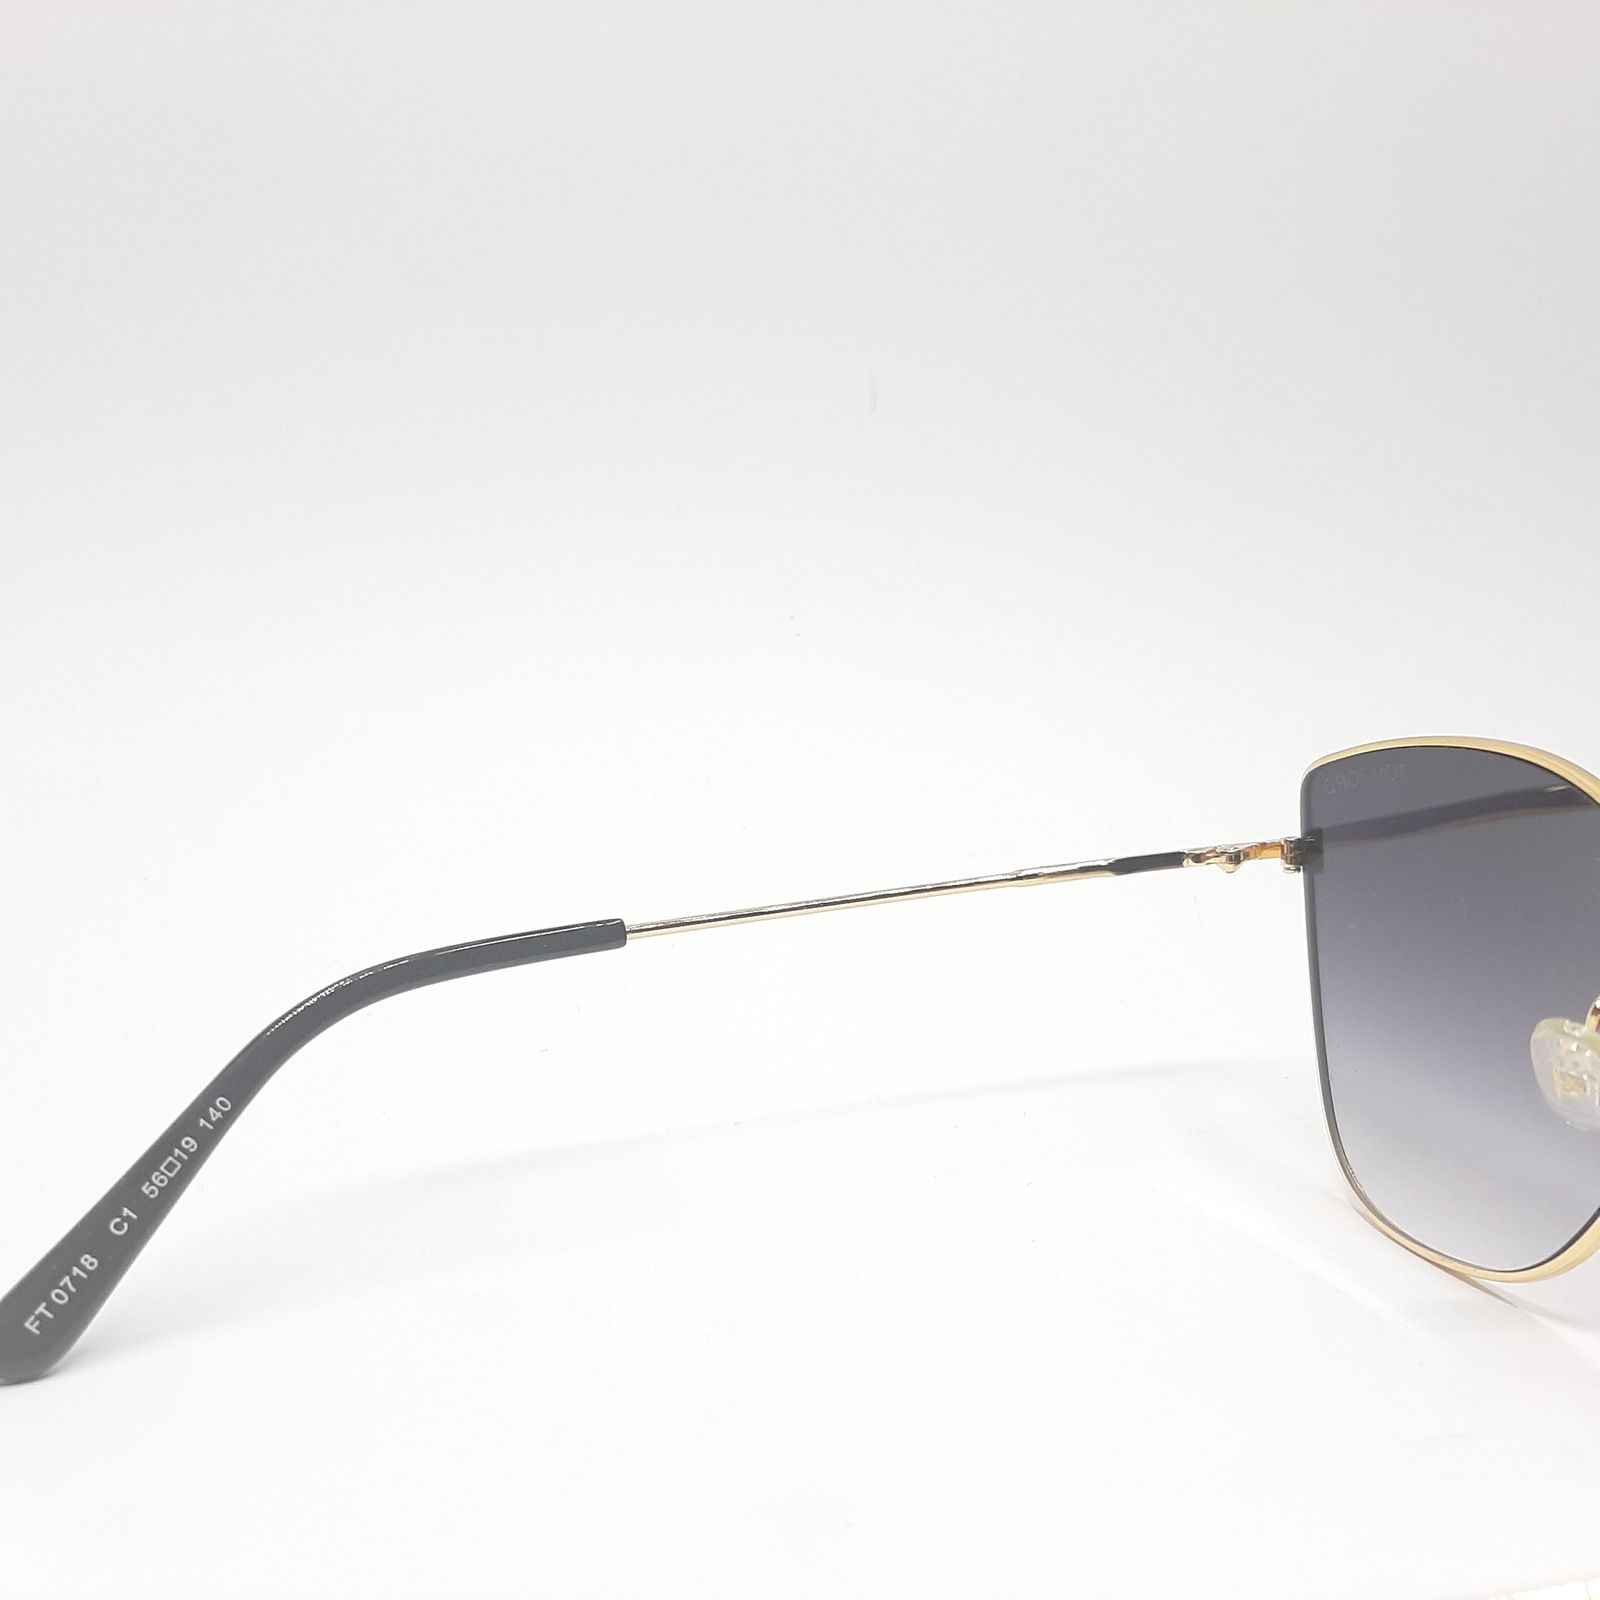 عینک آفتابی زنانه تام فورد مدل 0718c1 -  - 7